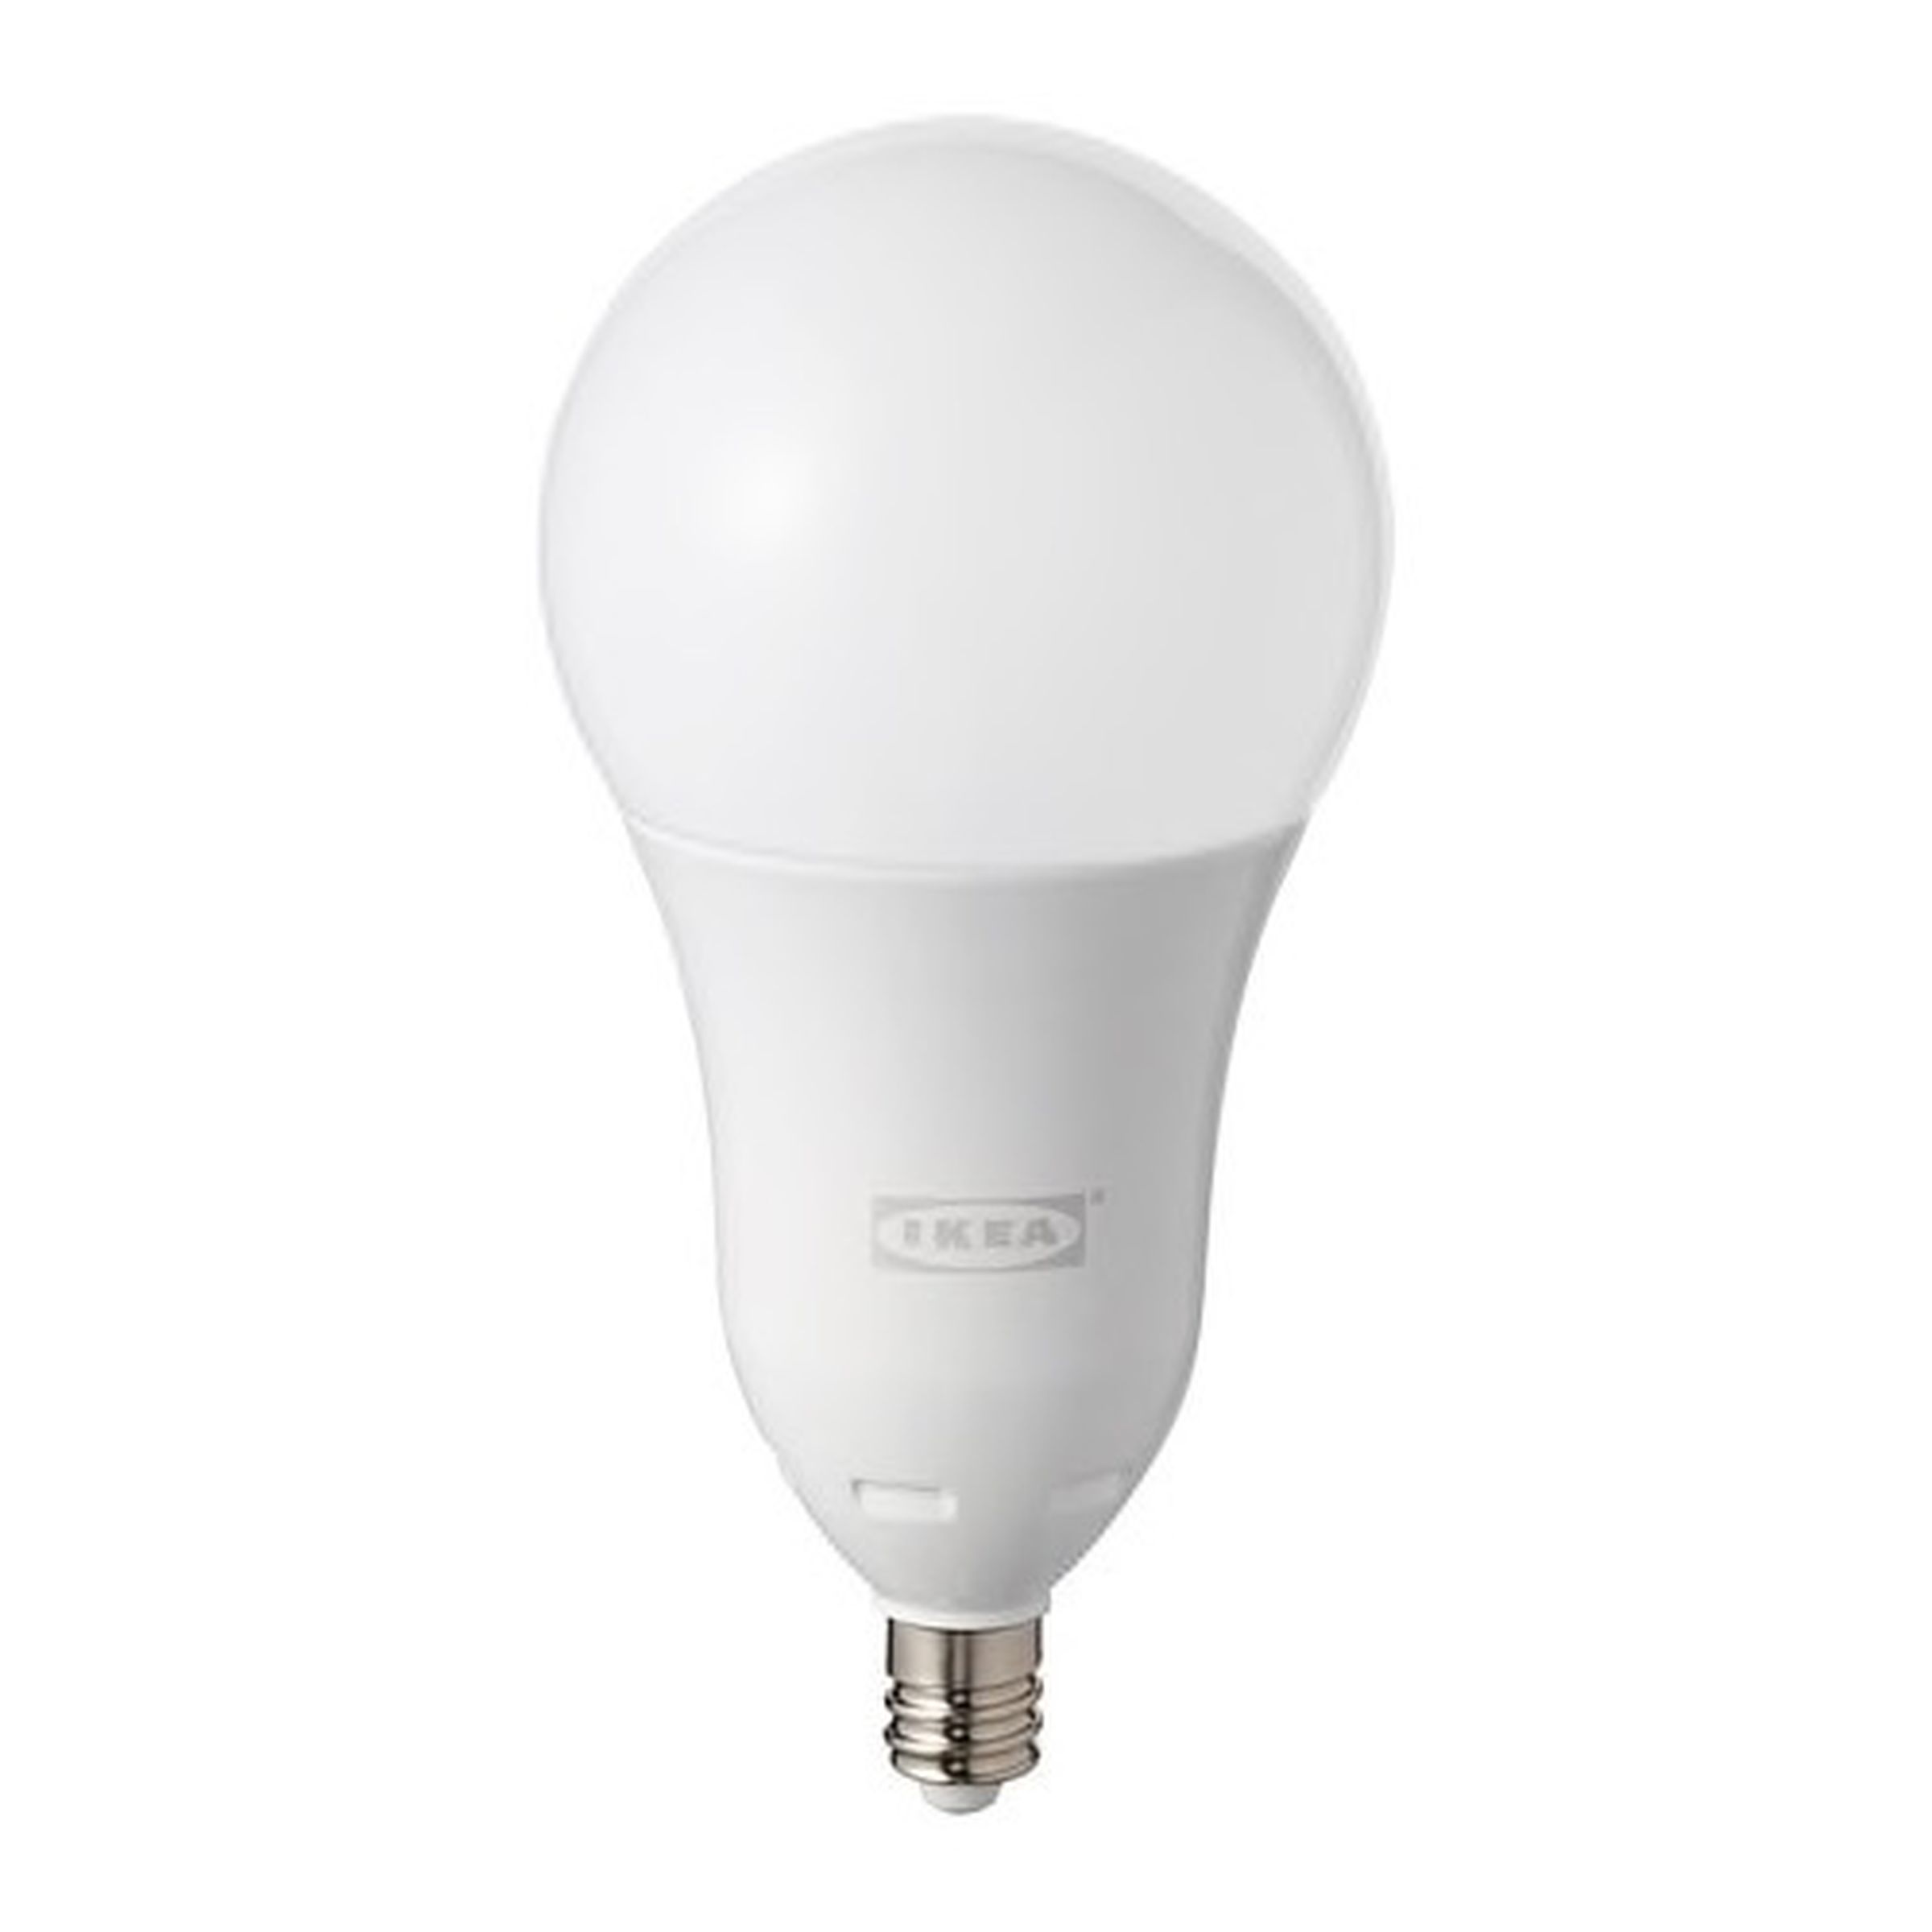 <a href="https://www.ikea.com/us/en/catalog/products/30460024/"><em>E12 bulb</em></a><em>.</em>